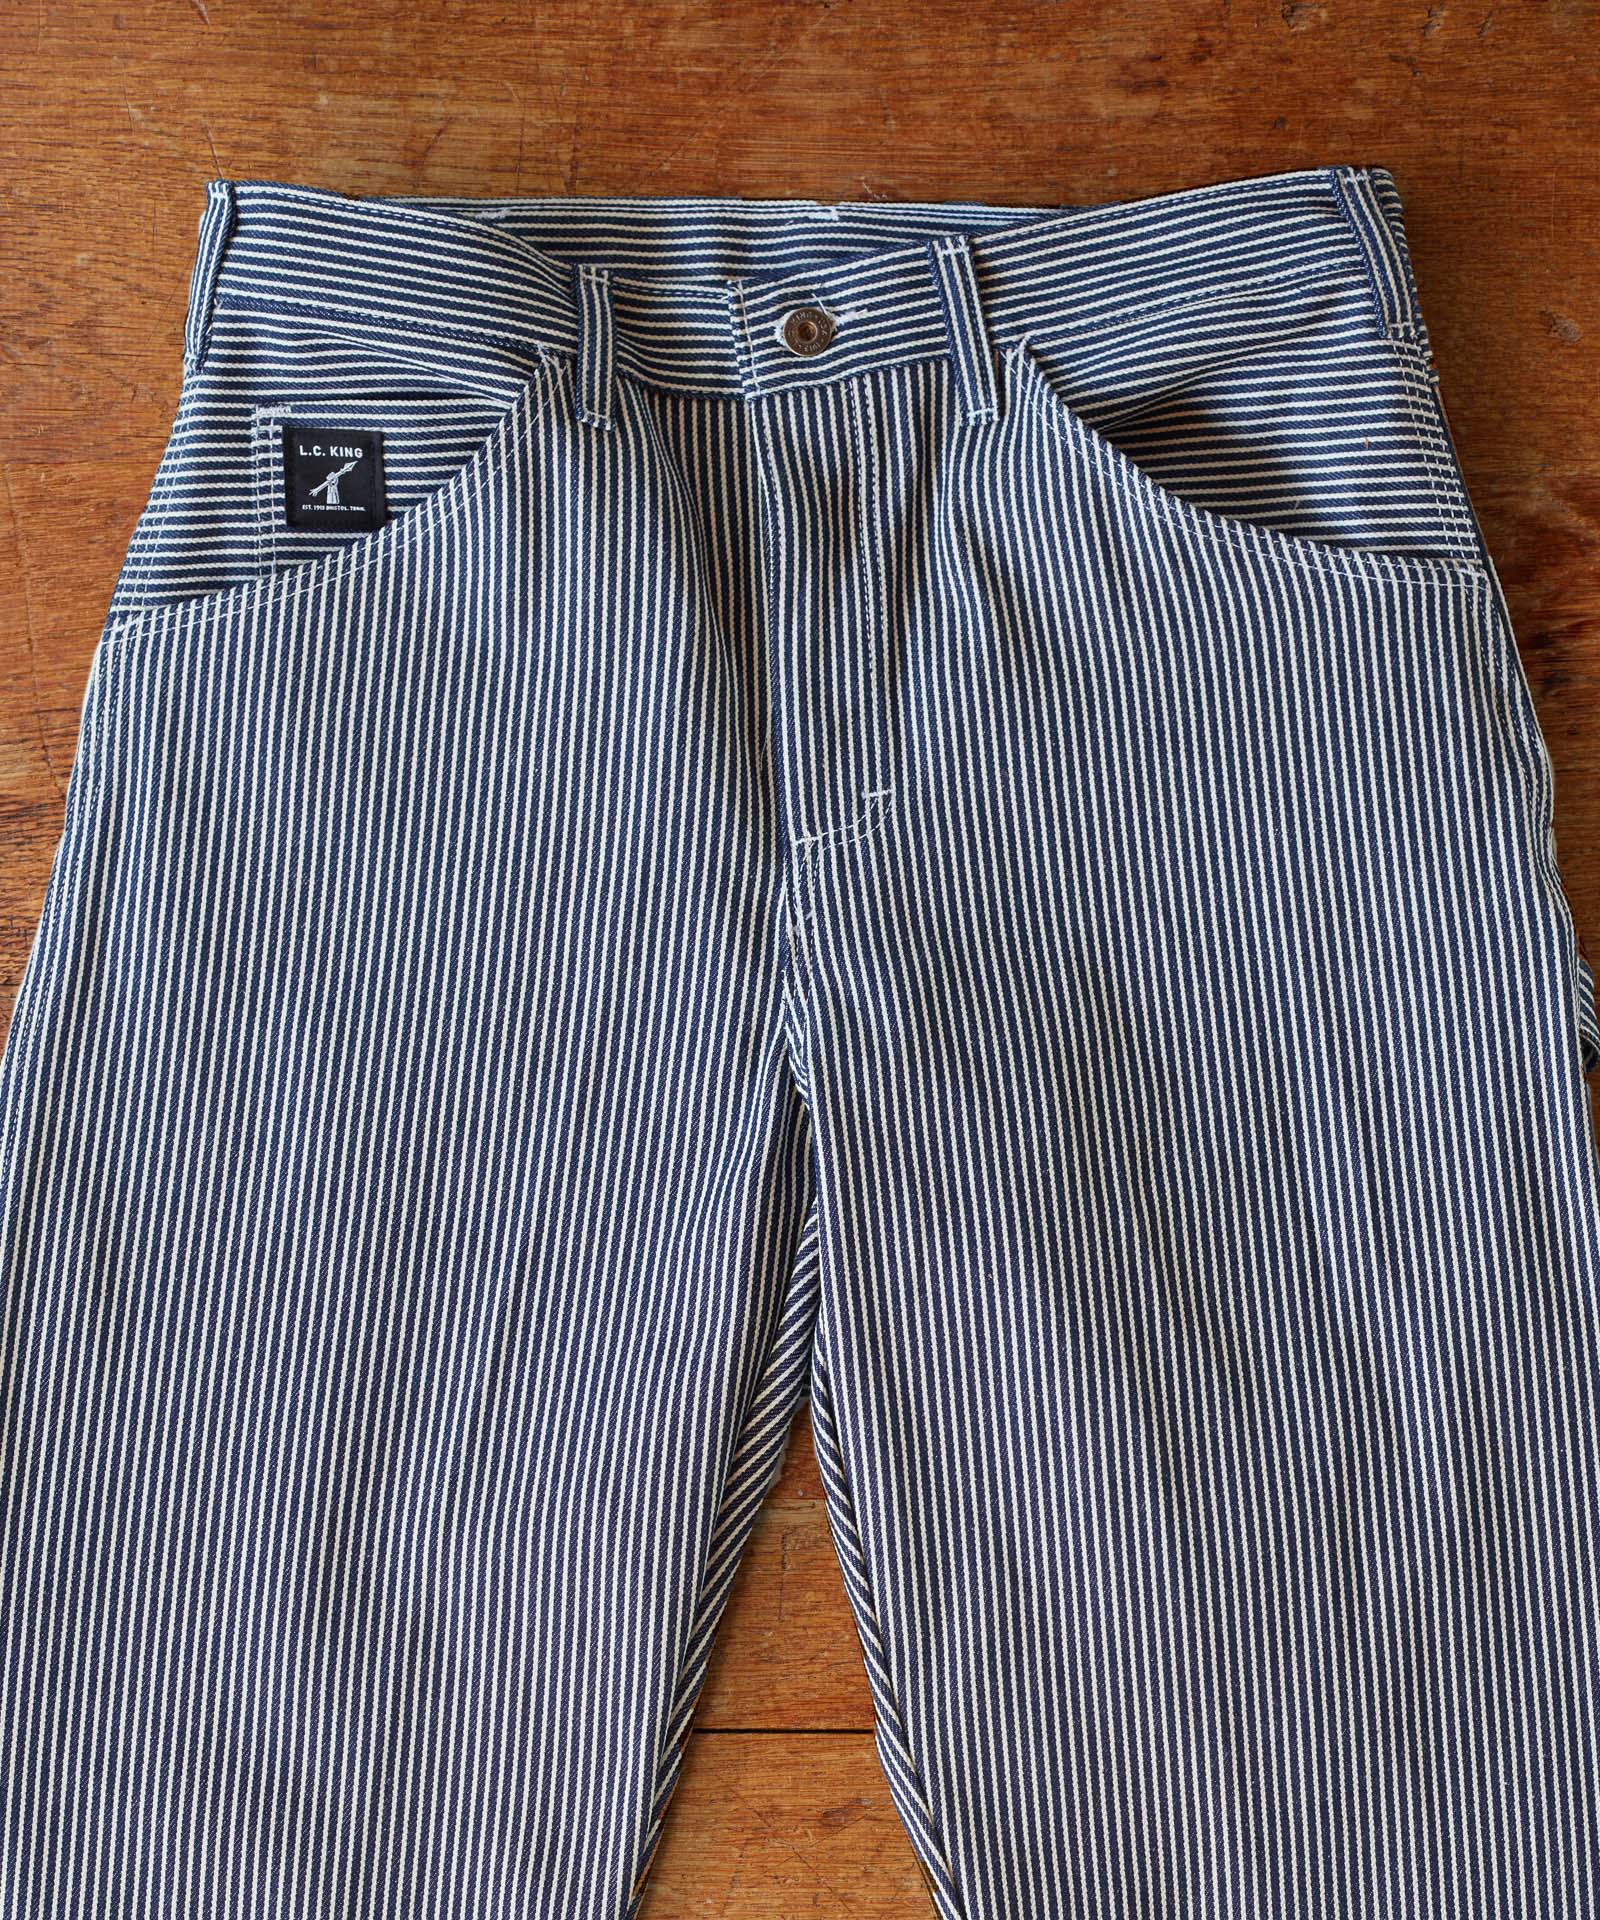 Mens Vintage Denim Vertical Striped Washed Jeans Straightleg Distre   mardenshops